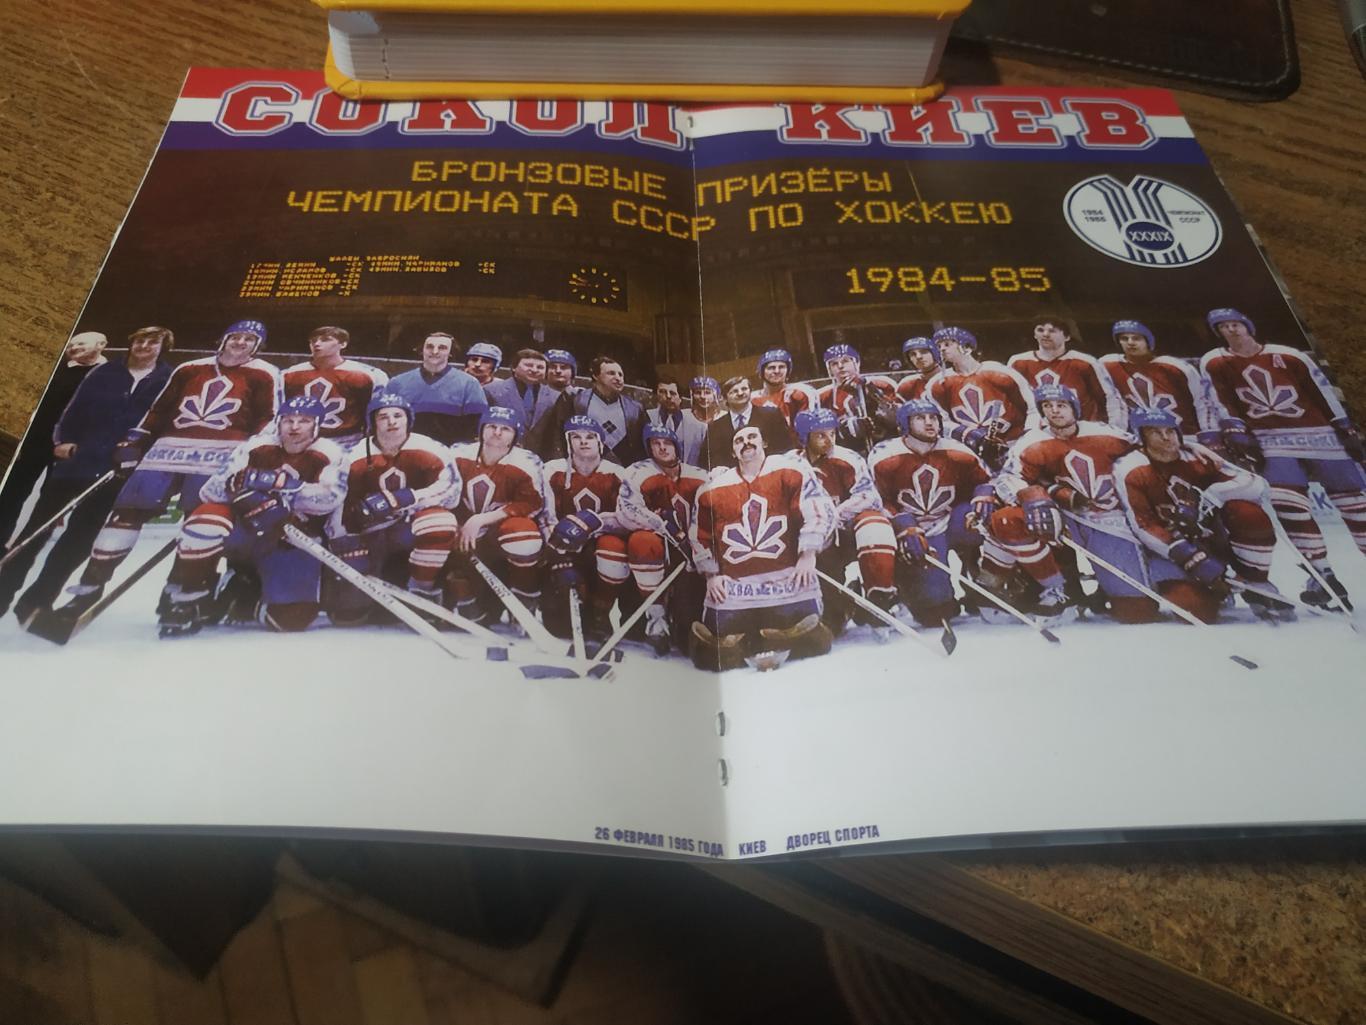 СОКОЛ Киев - бронзовый прнизёр Чемпионата СССР по хоккею 1984-85 гг 1